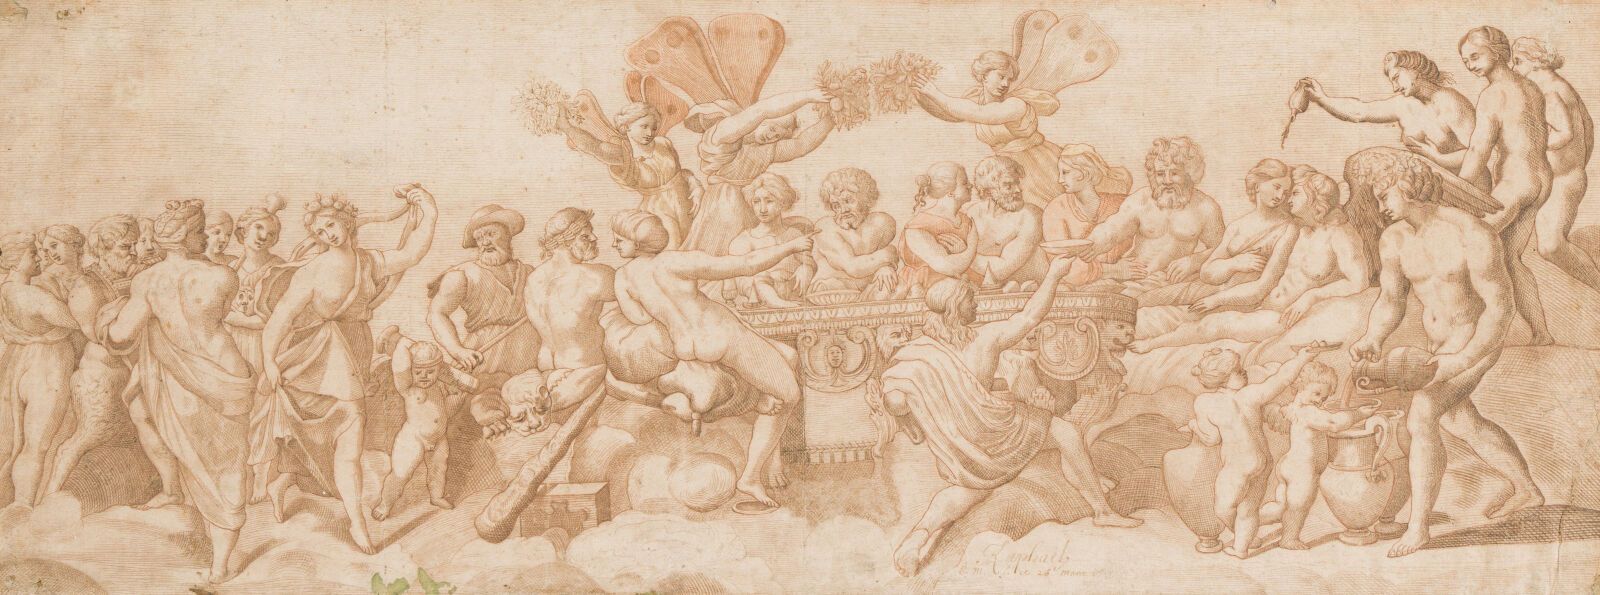 Null 7. École italienne du XVIIe siècle

Festin des Dieux

Plume et lavis d'encr&hellip;